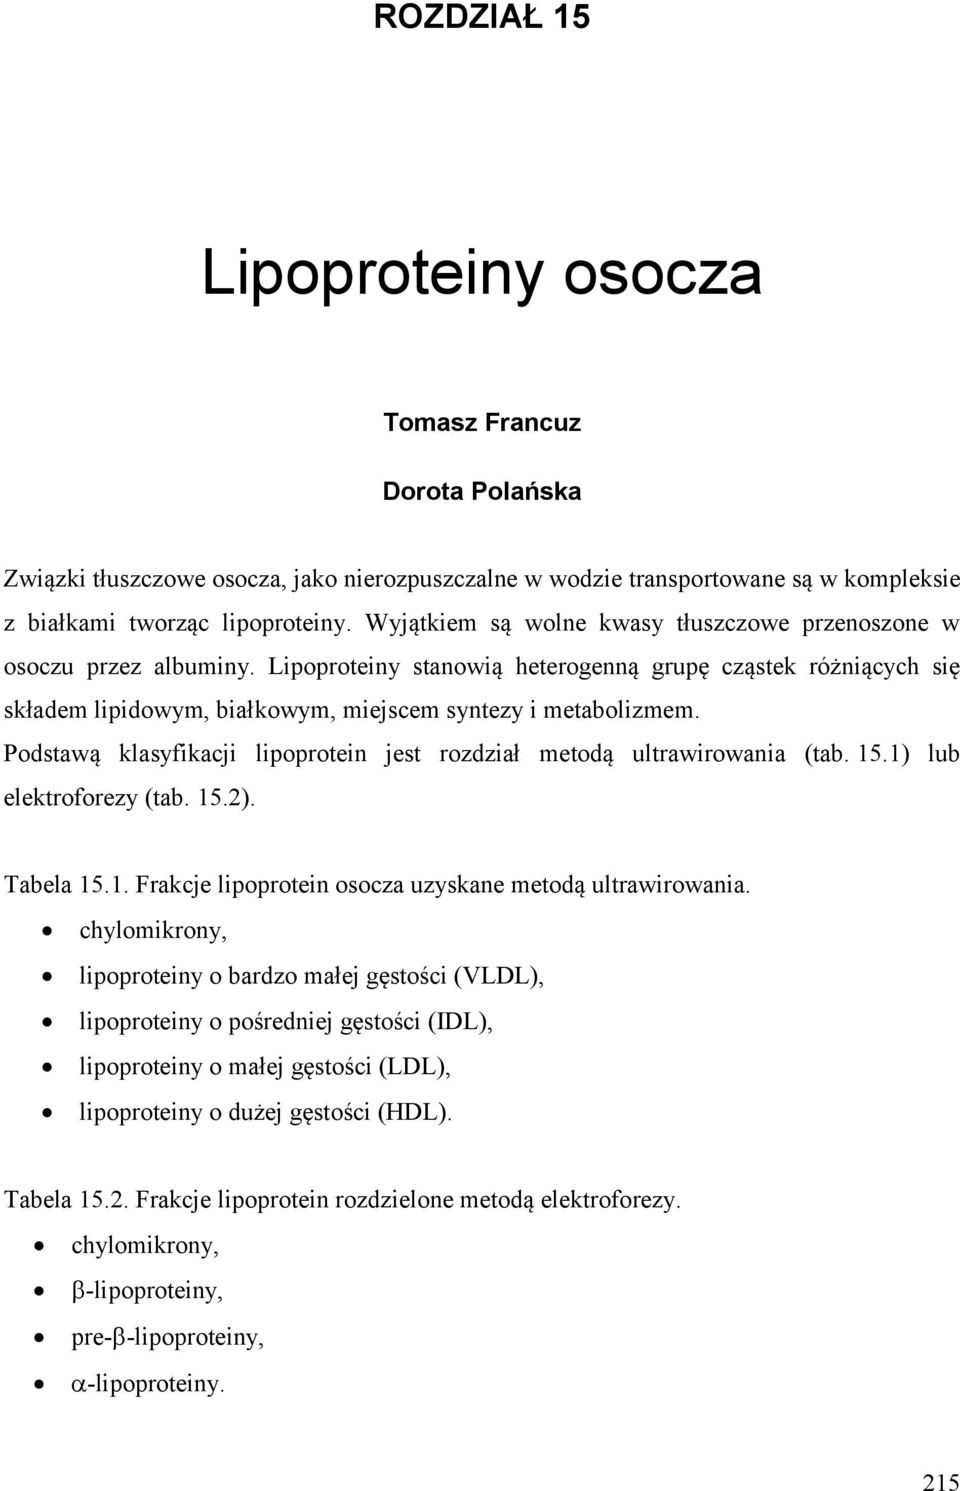 Podstawą klasyfikacji lipoprotein jest rozdział metodą ultrawirowania (tab. 15.1) lub elektroforezy (tab. 15.2). Tabela 15.1. Frakcje lipoprotein osocza uzyskane metodą ultrawirowania.